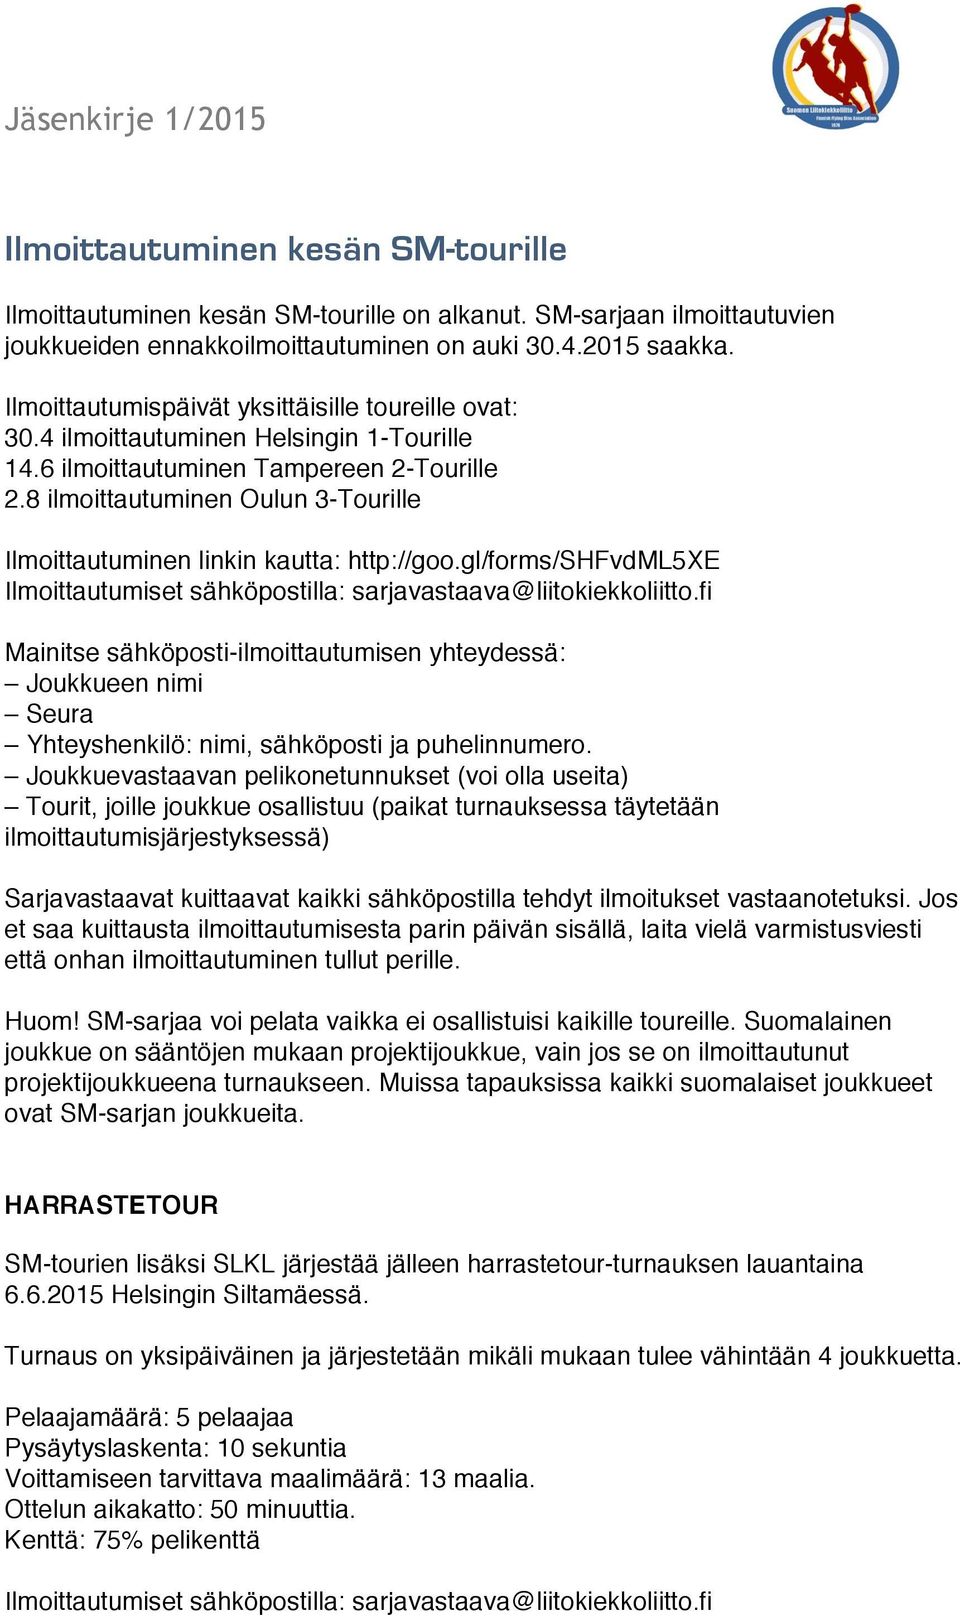 8 ilmoittautuminen Oulun 3-Tourille Ilmoittautuminen linkin kautta: http://goo.gl/forms/shfvdml5xe Ilmoittautumiset sähköpostilla: sarjavastaava@liitokiekkoliitto.